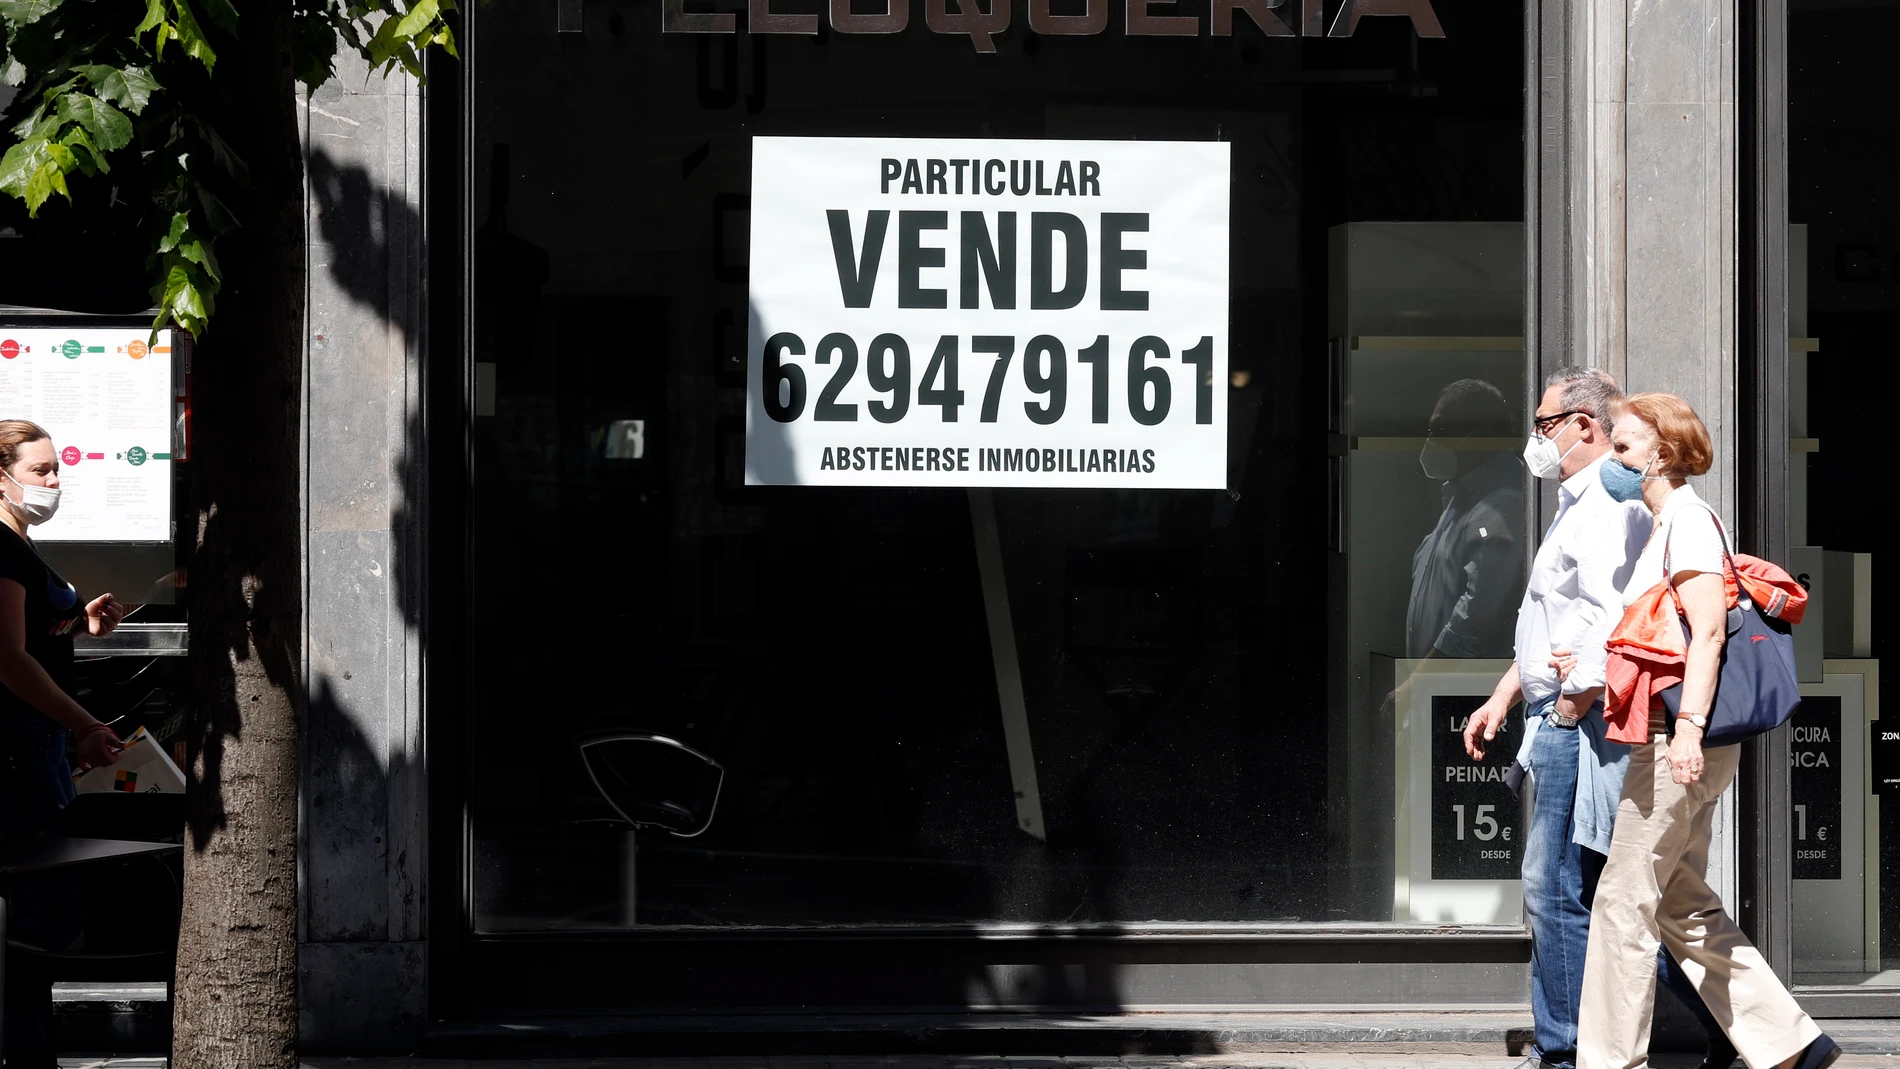 Un local comercial en venta en Bilbao, debido a las crisis social y económica derivada del covid 19.